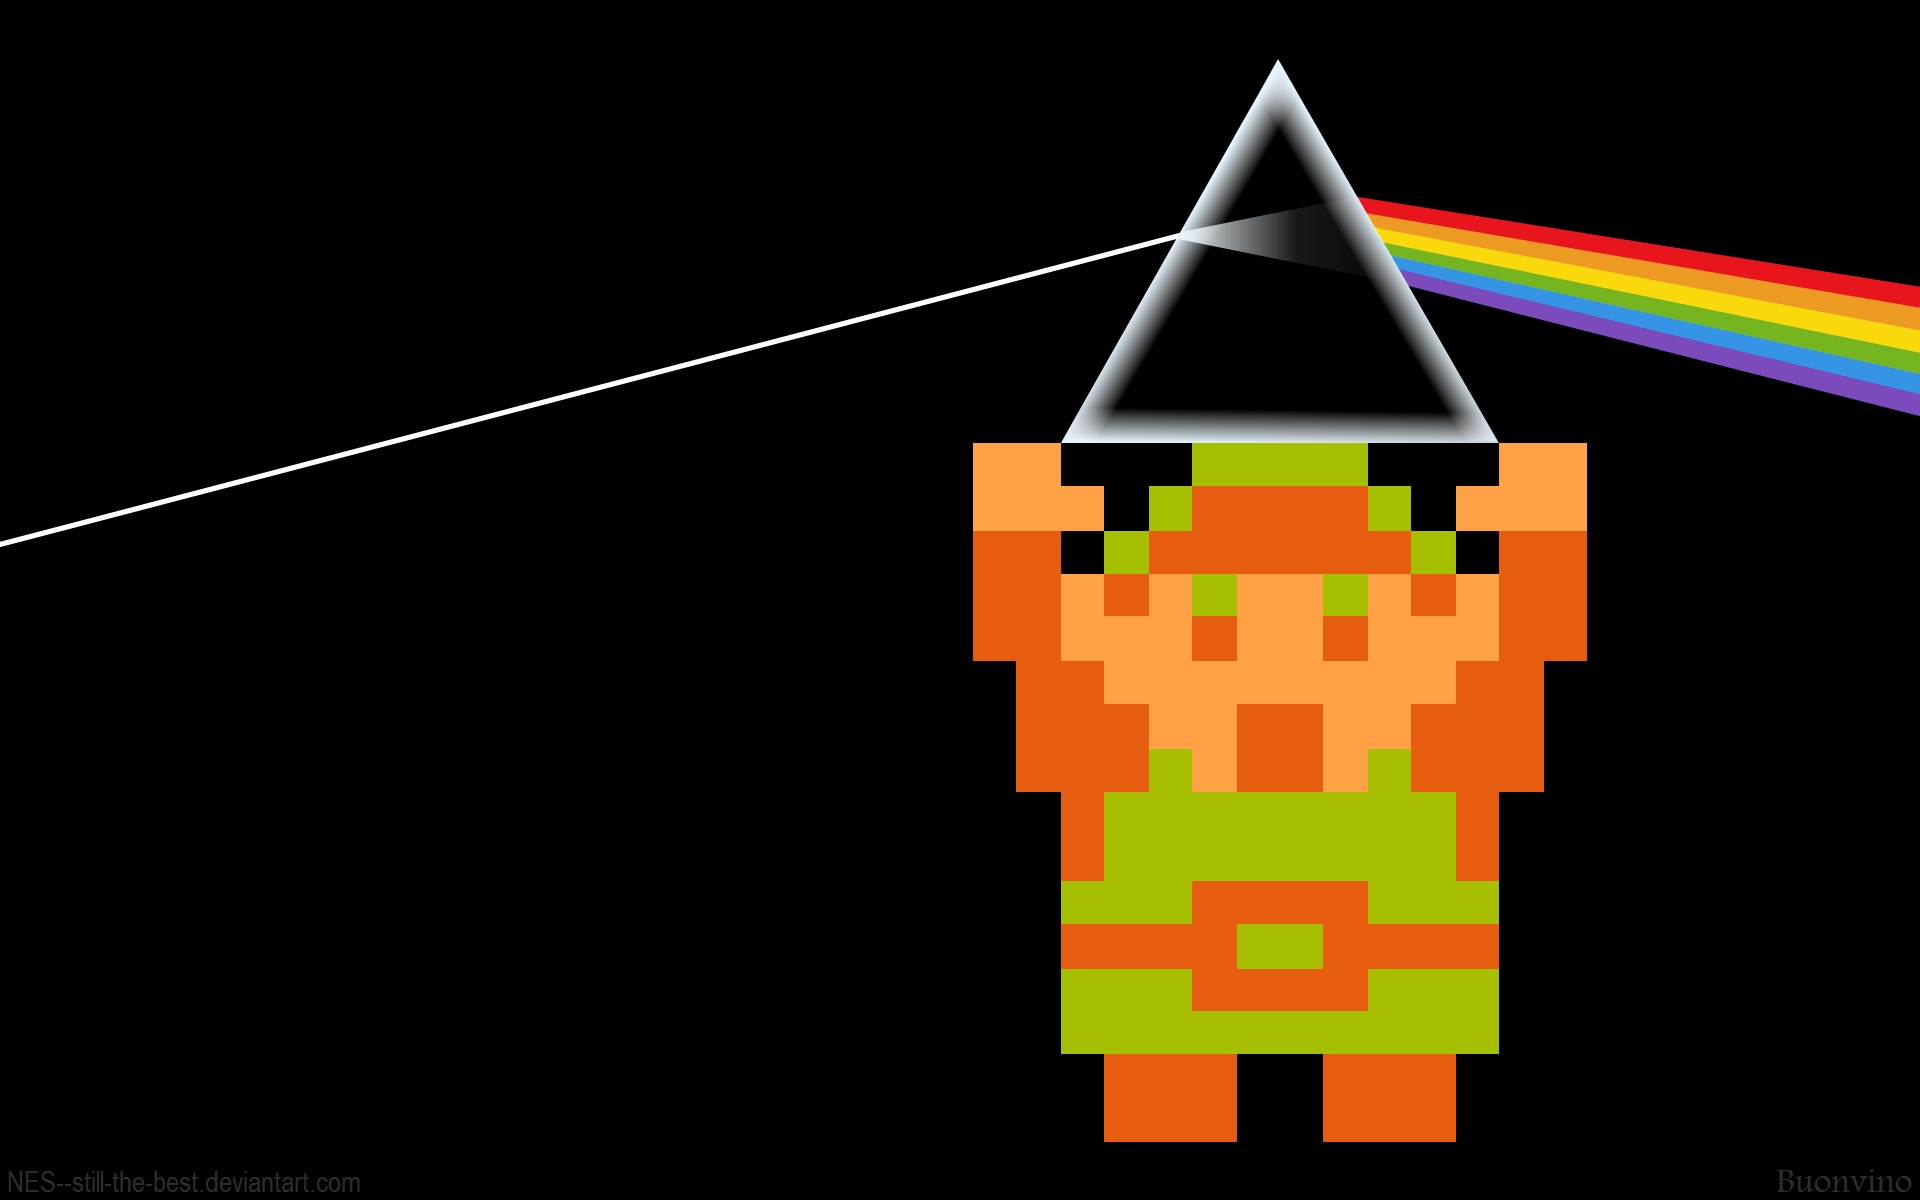 видеоигры, Pink Floyd, Линк, призма, Легенда о Zelda, радуга, ретро-игры - обои на рабочий стол